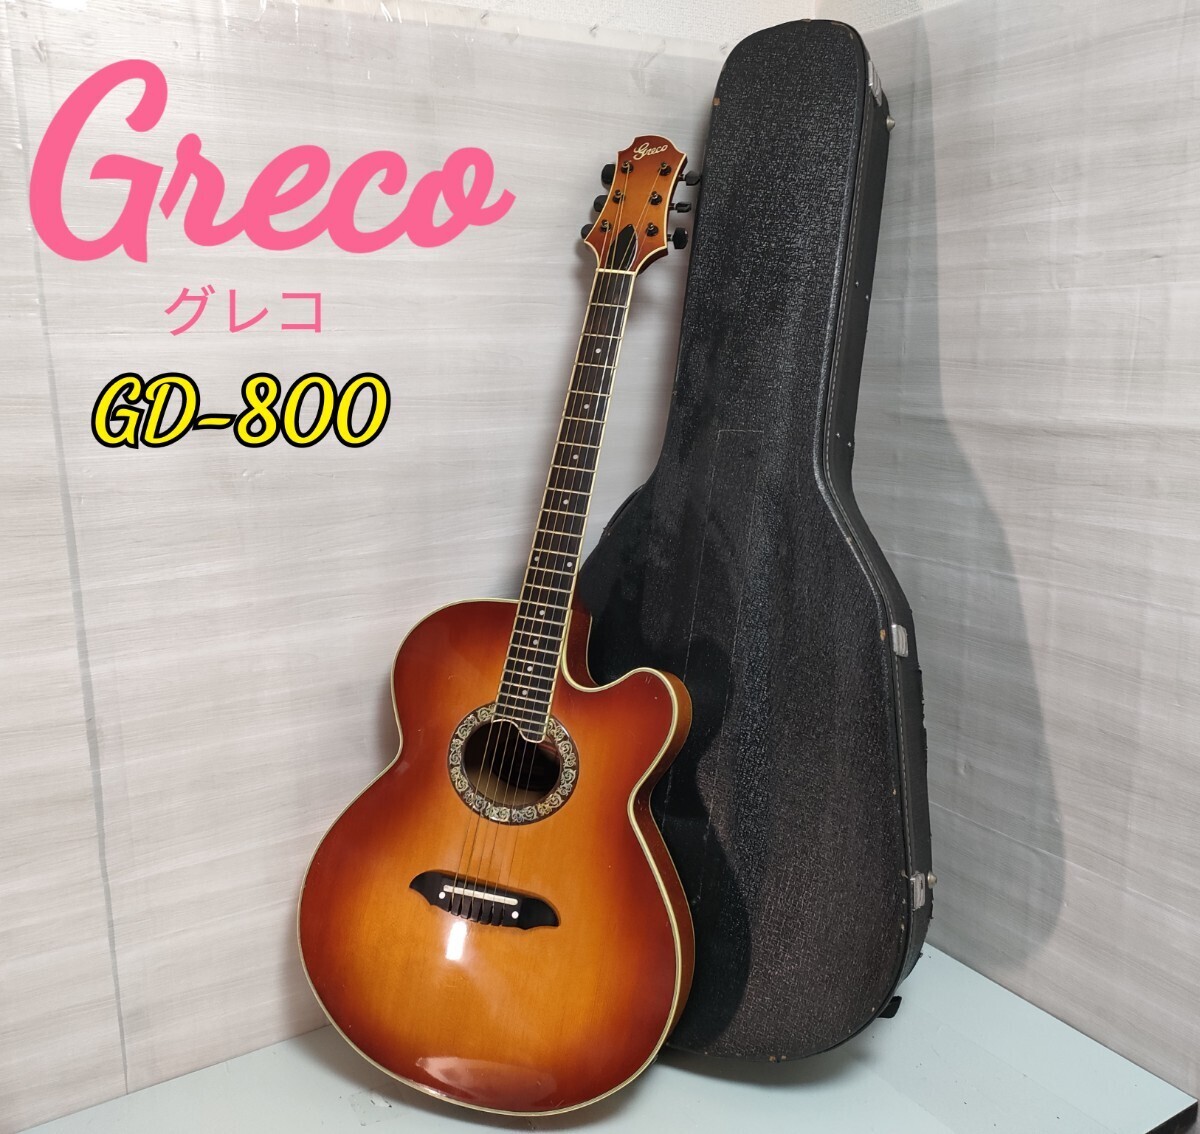 Greco グレコ GD-800 エレアコギター【現状品】ハードケース付き_画像1